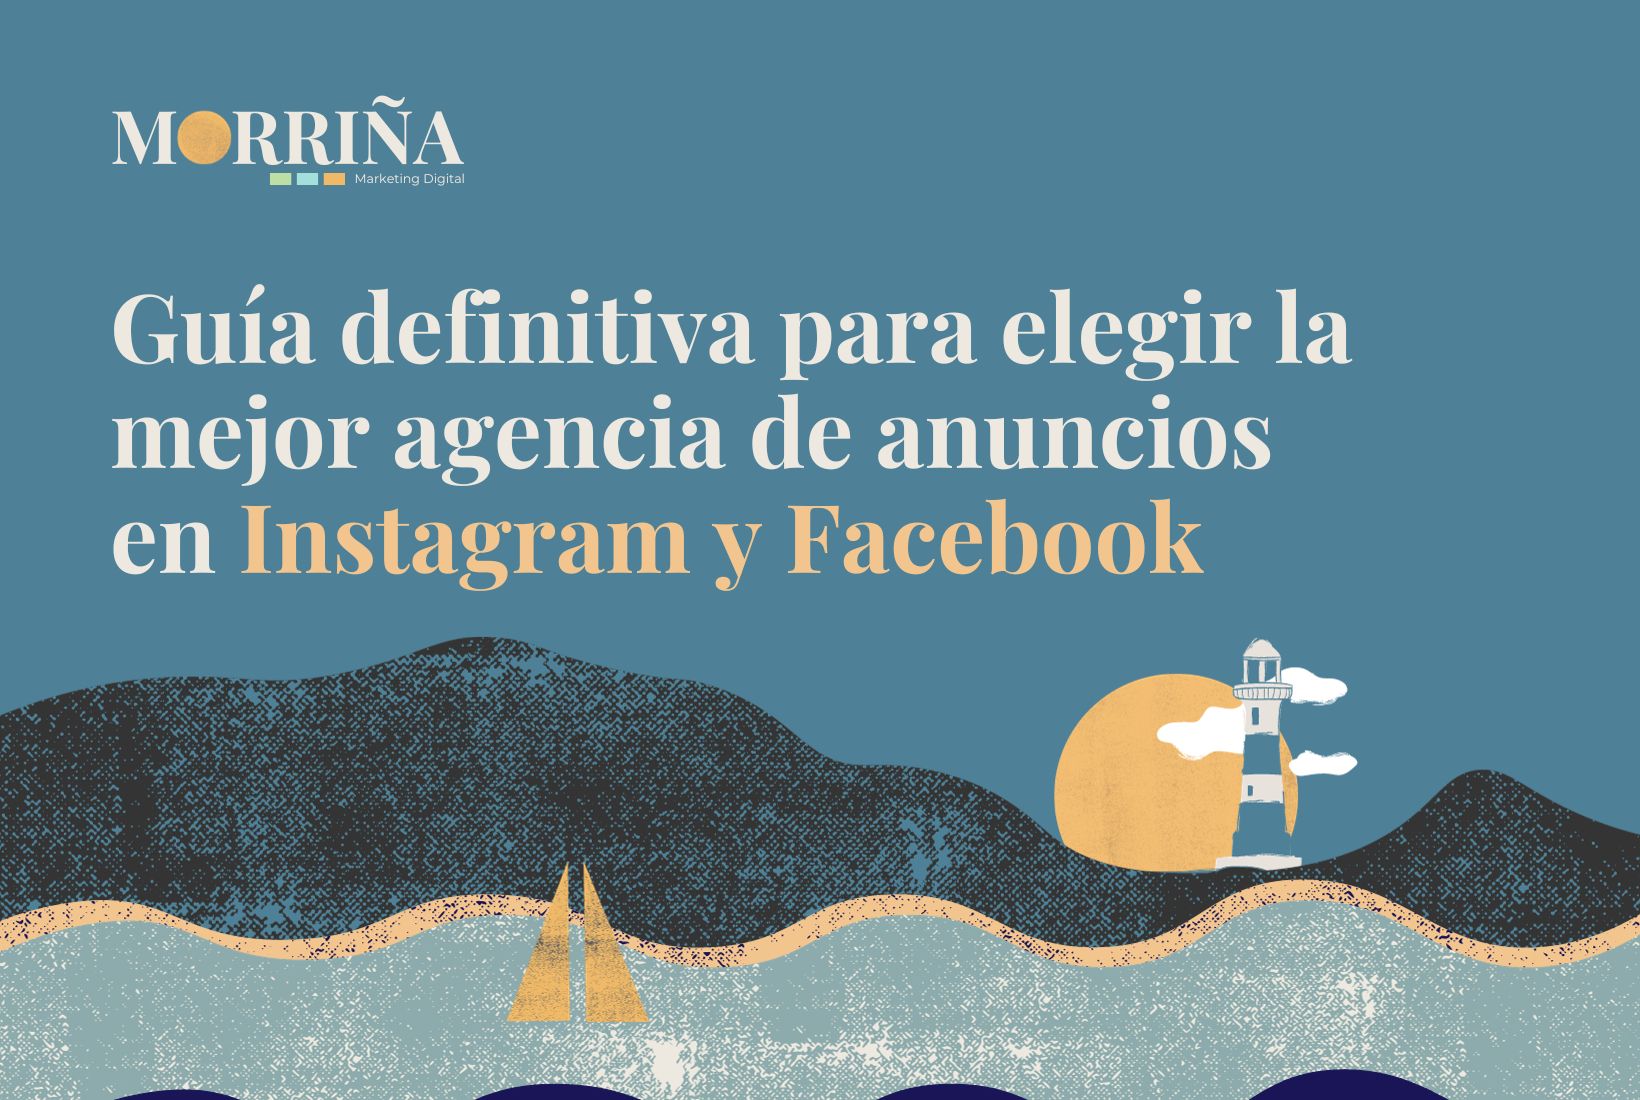 Guía definitiva para elegir la mejor agencia de anuncios en Instagram y Facebook Morriña Marketing